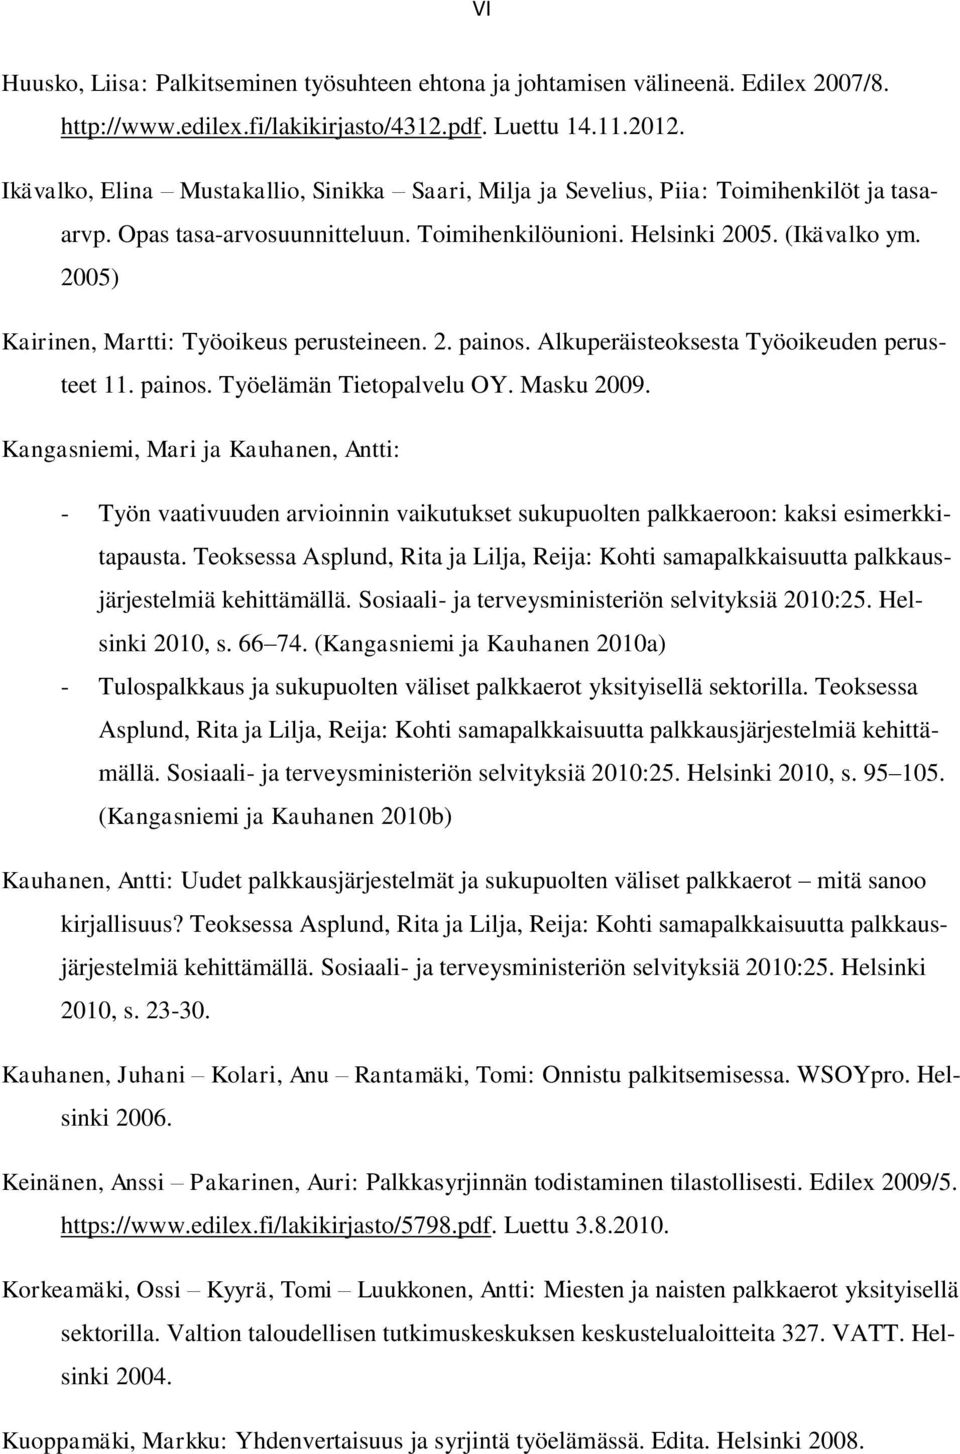 2005) Kairinen, Martti: Työoikeus perusteineen. 2. painos. Alkuperäisteoksesta Työoikeuden perusteet 11. painos. Työelämän Tietopalvelu OY. Masku 2009.